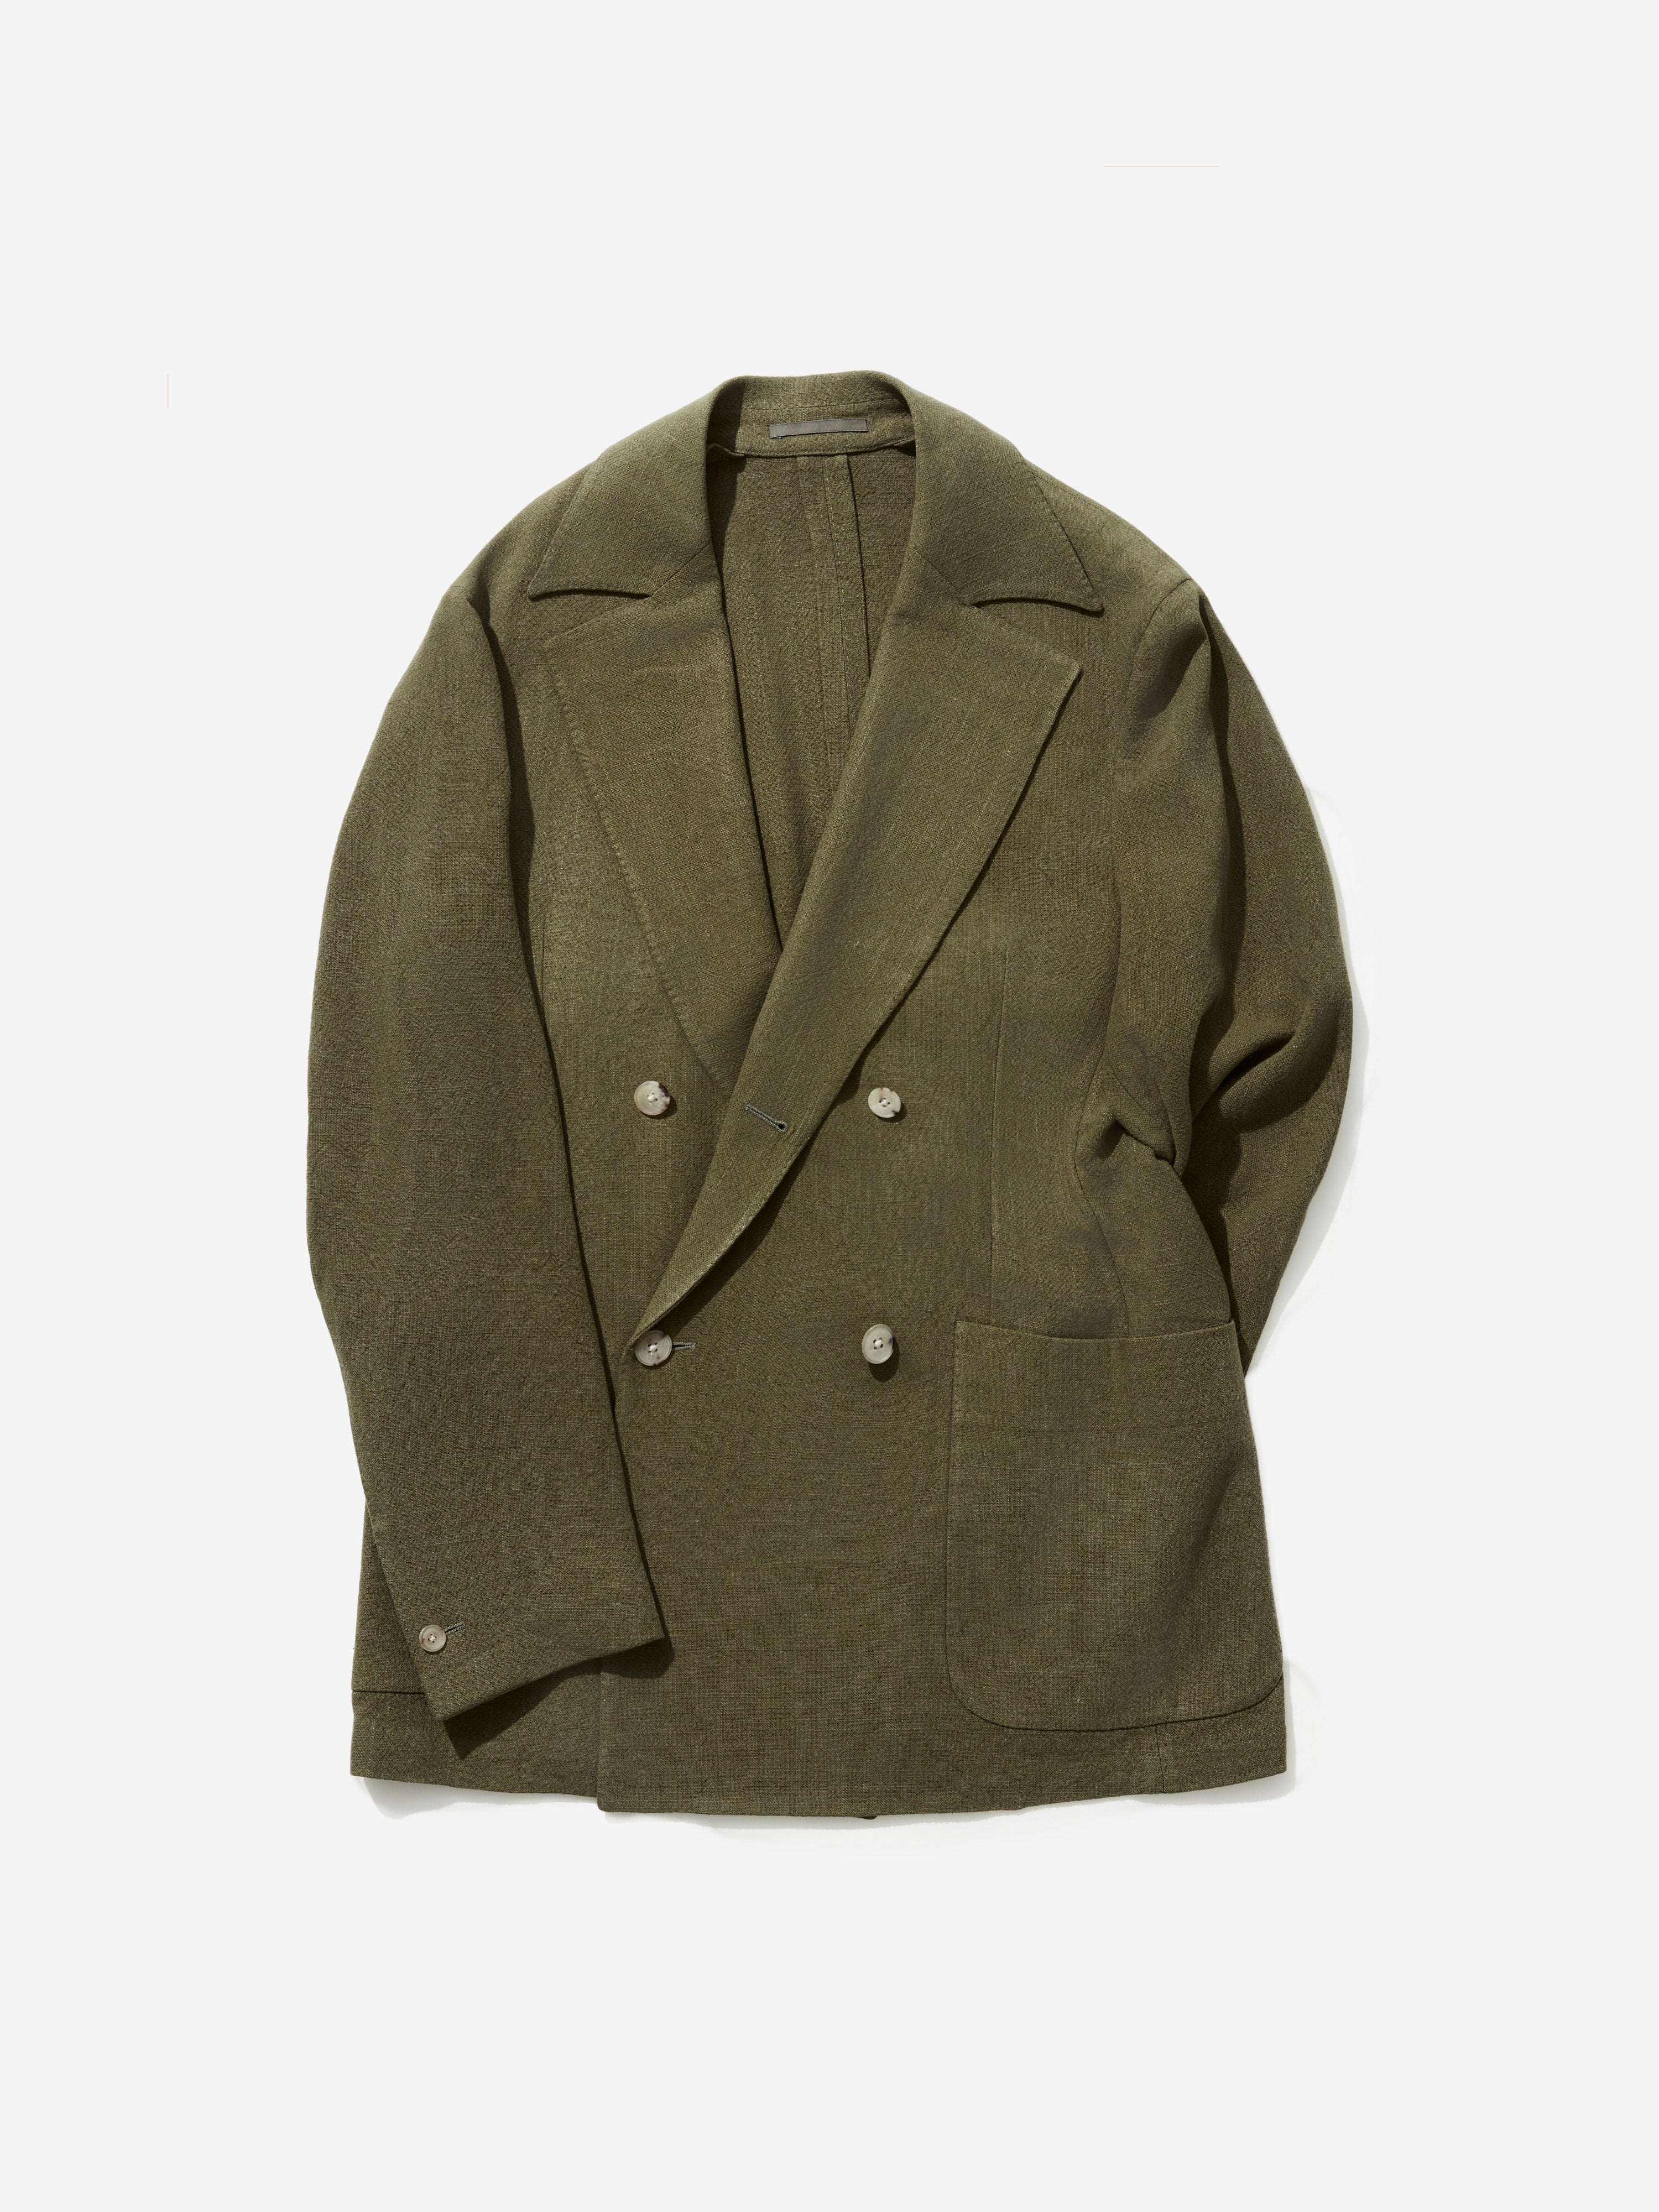 Khaki Stonewashed Linen Jacket - Grand Le Mar